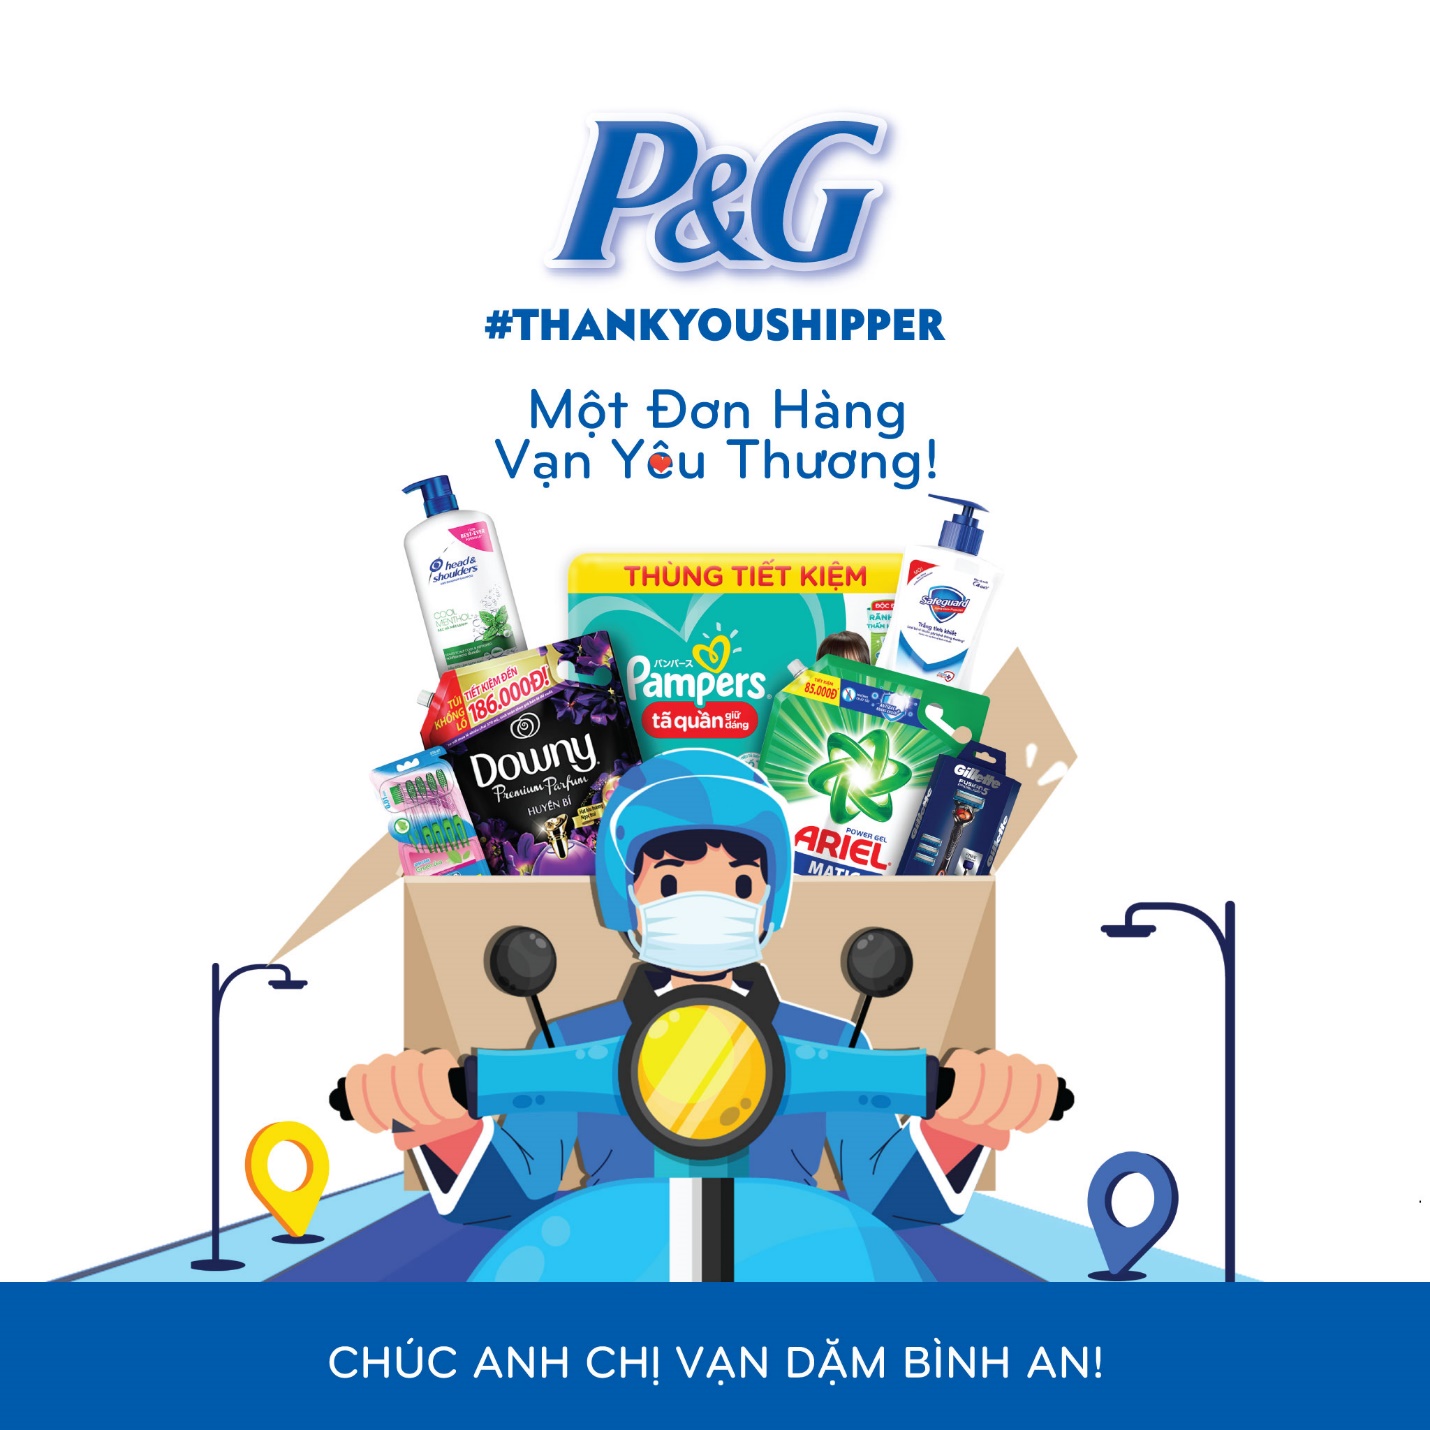 P&G Việt Nam tặng 10,000 phần quà cảm ơn đến các shipper qua chương trình “Một đơn hàng, Vạn yêu thương” - Ảnh 1.